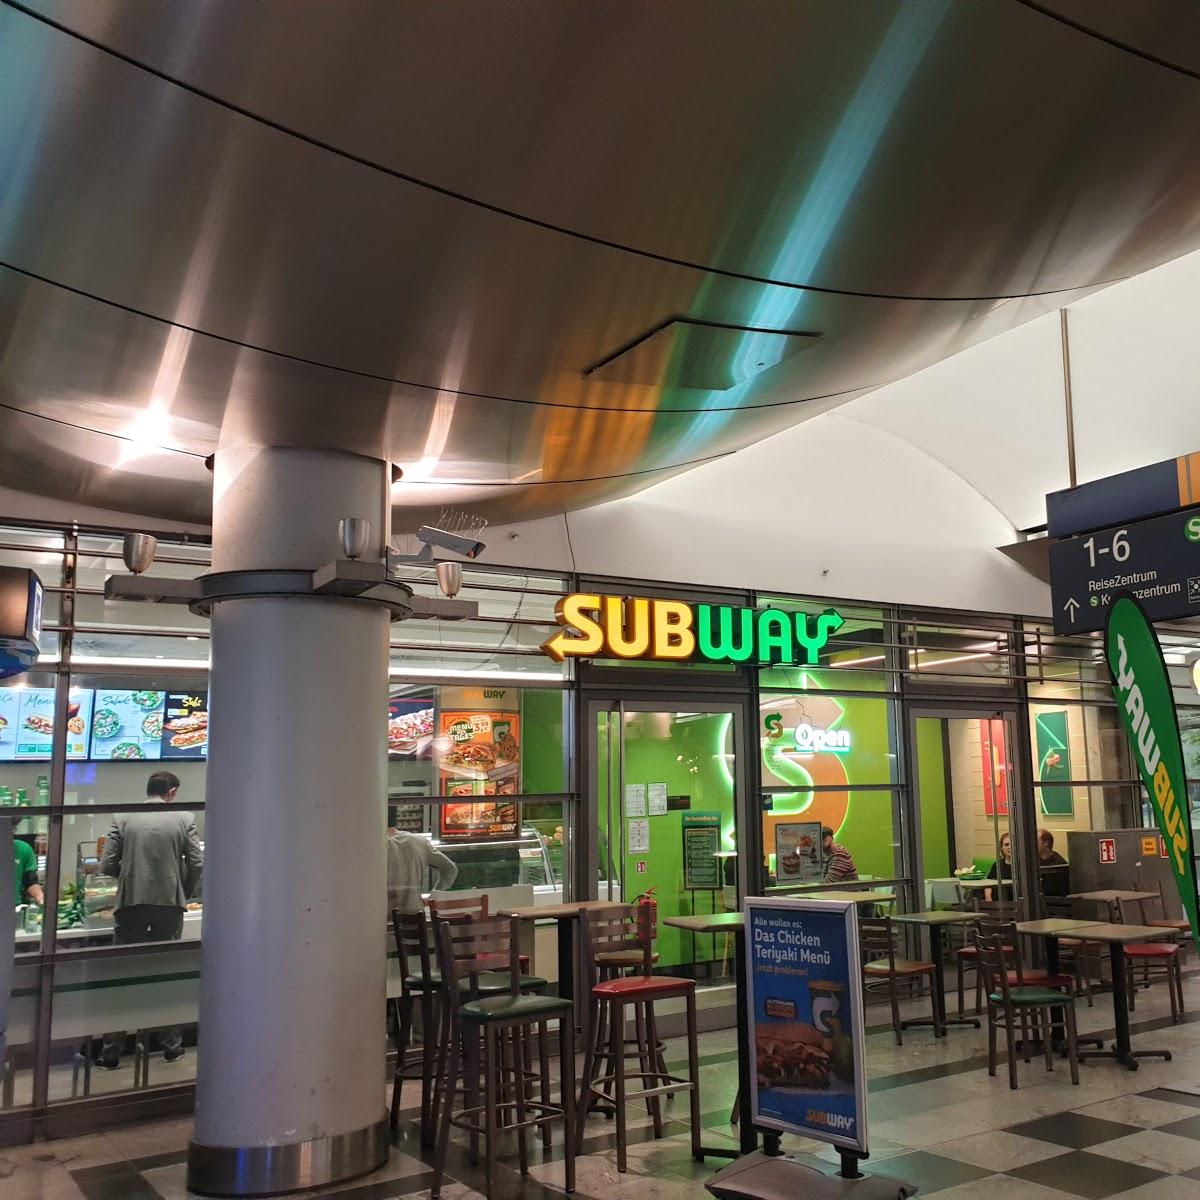 Restaurant "Subway" in Berlin